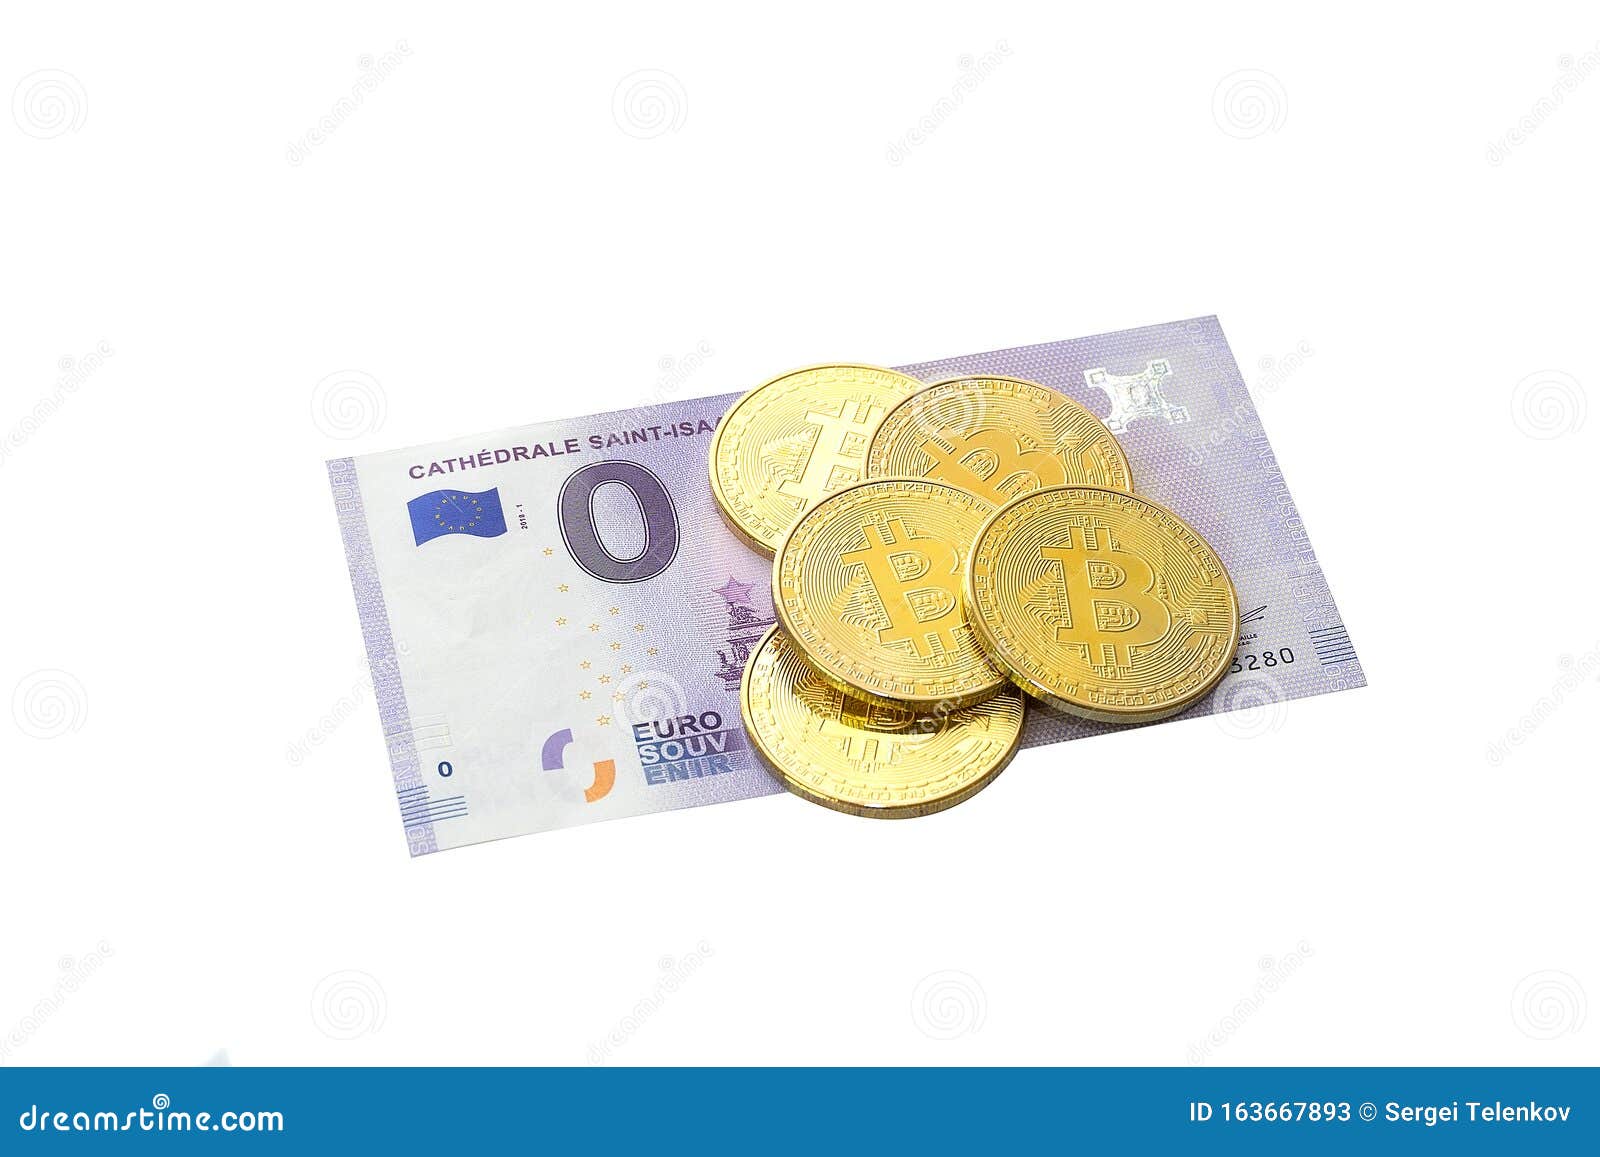 Cambio Bitcoin Euro BTC Oggi (Tempo reale) - cambioeuro